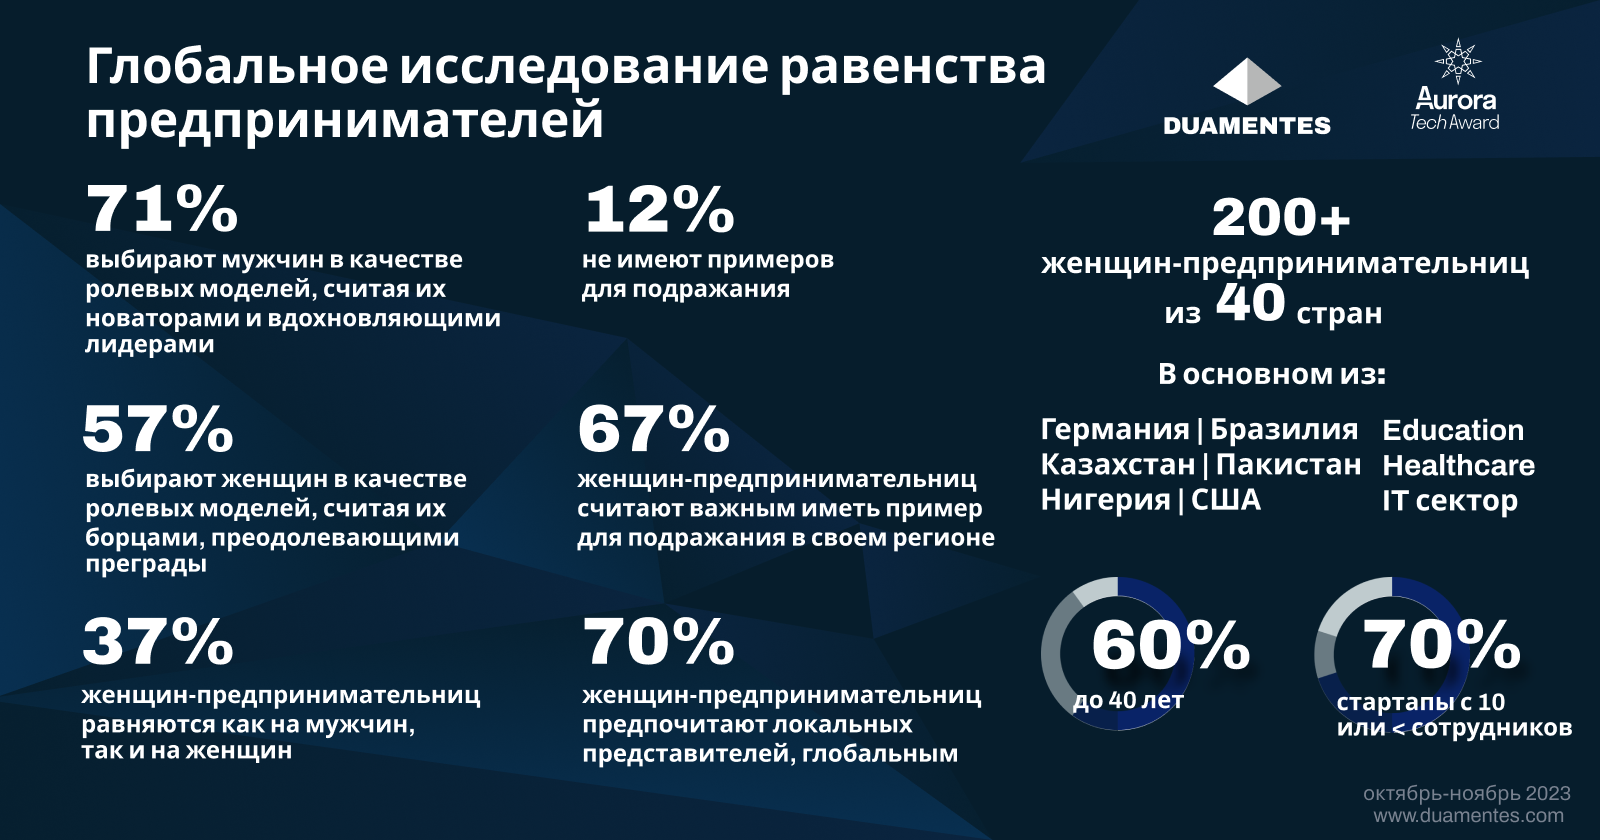 Большинство казахстанок предпочитают локальных ролевых моделей в IT индустрии